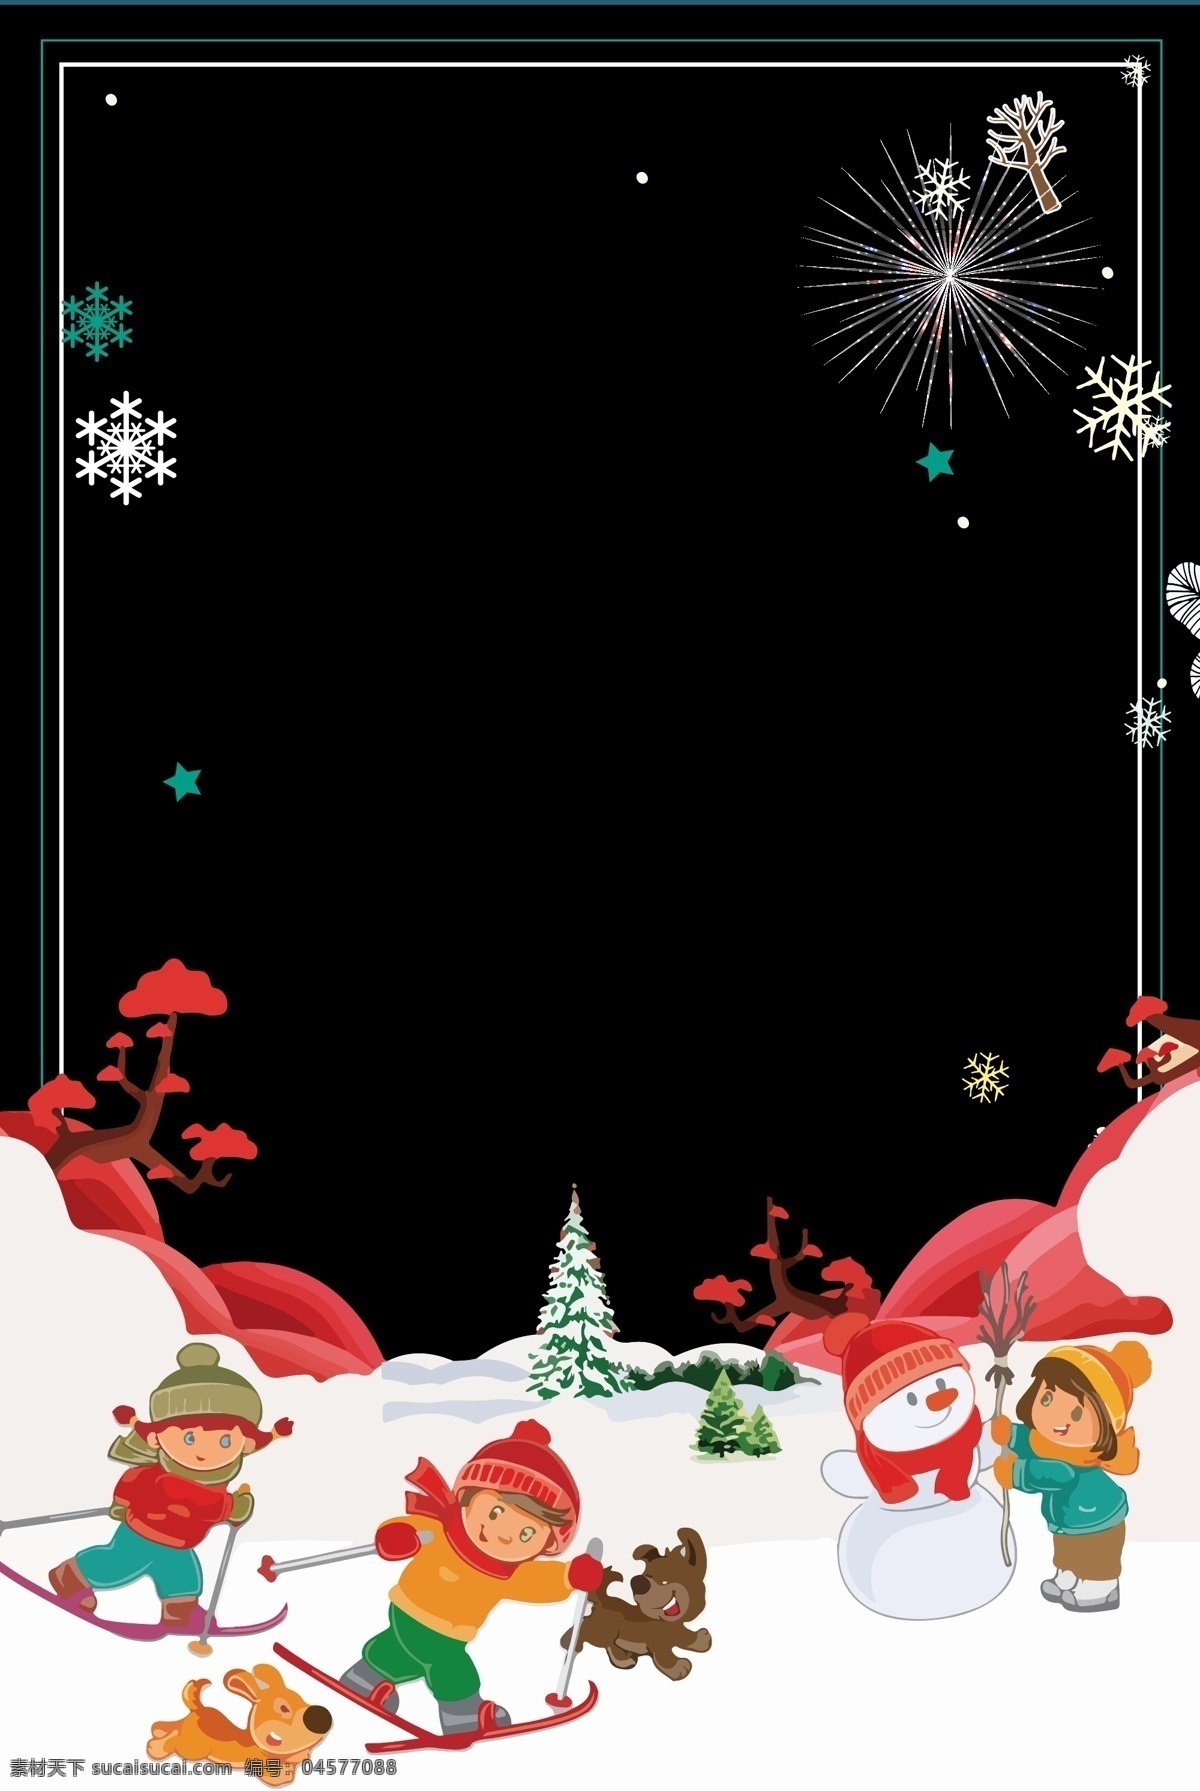 黑色 圣诞节 圣诞 狂欢 展板 背景 雪人 广告背景 圣诞树 小孩 圣诞节背景 新年海报 节日背景 雪 划雪